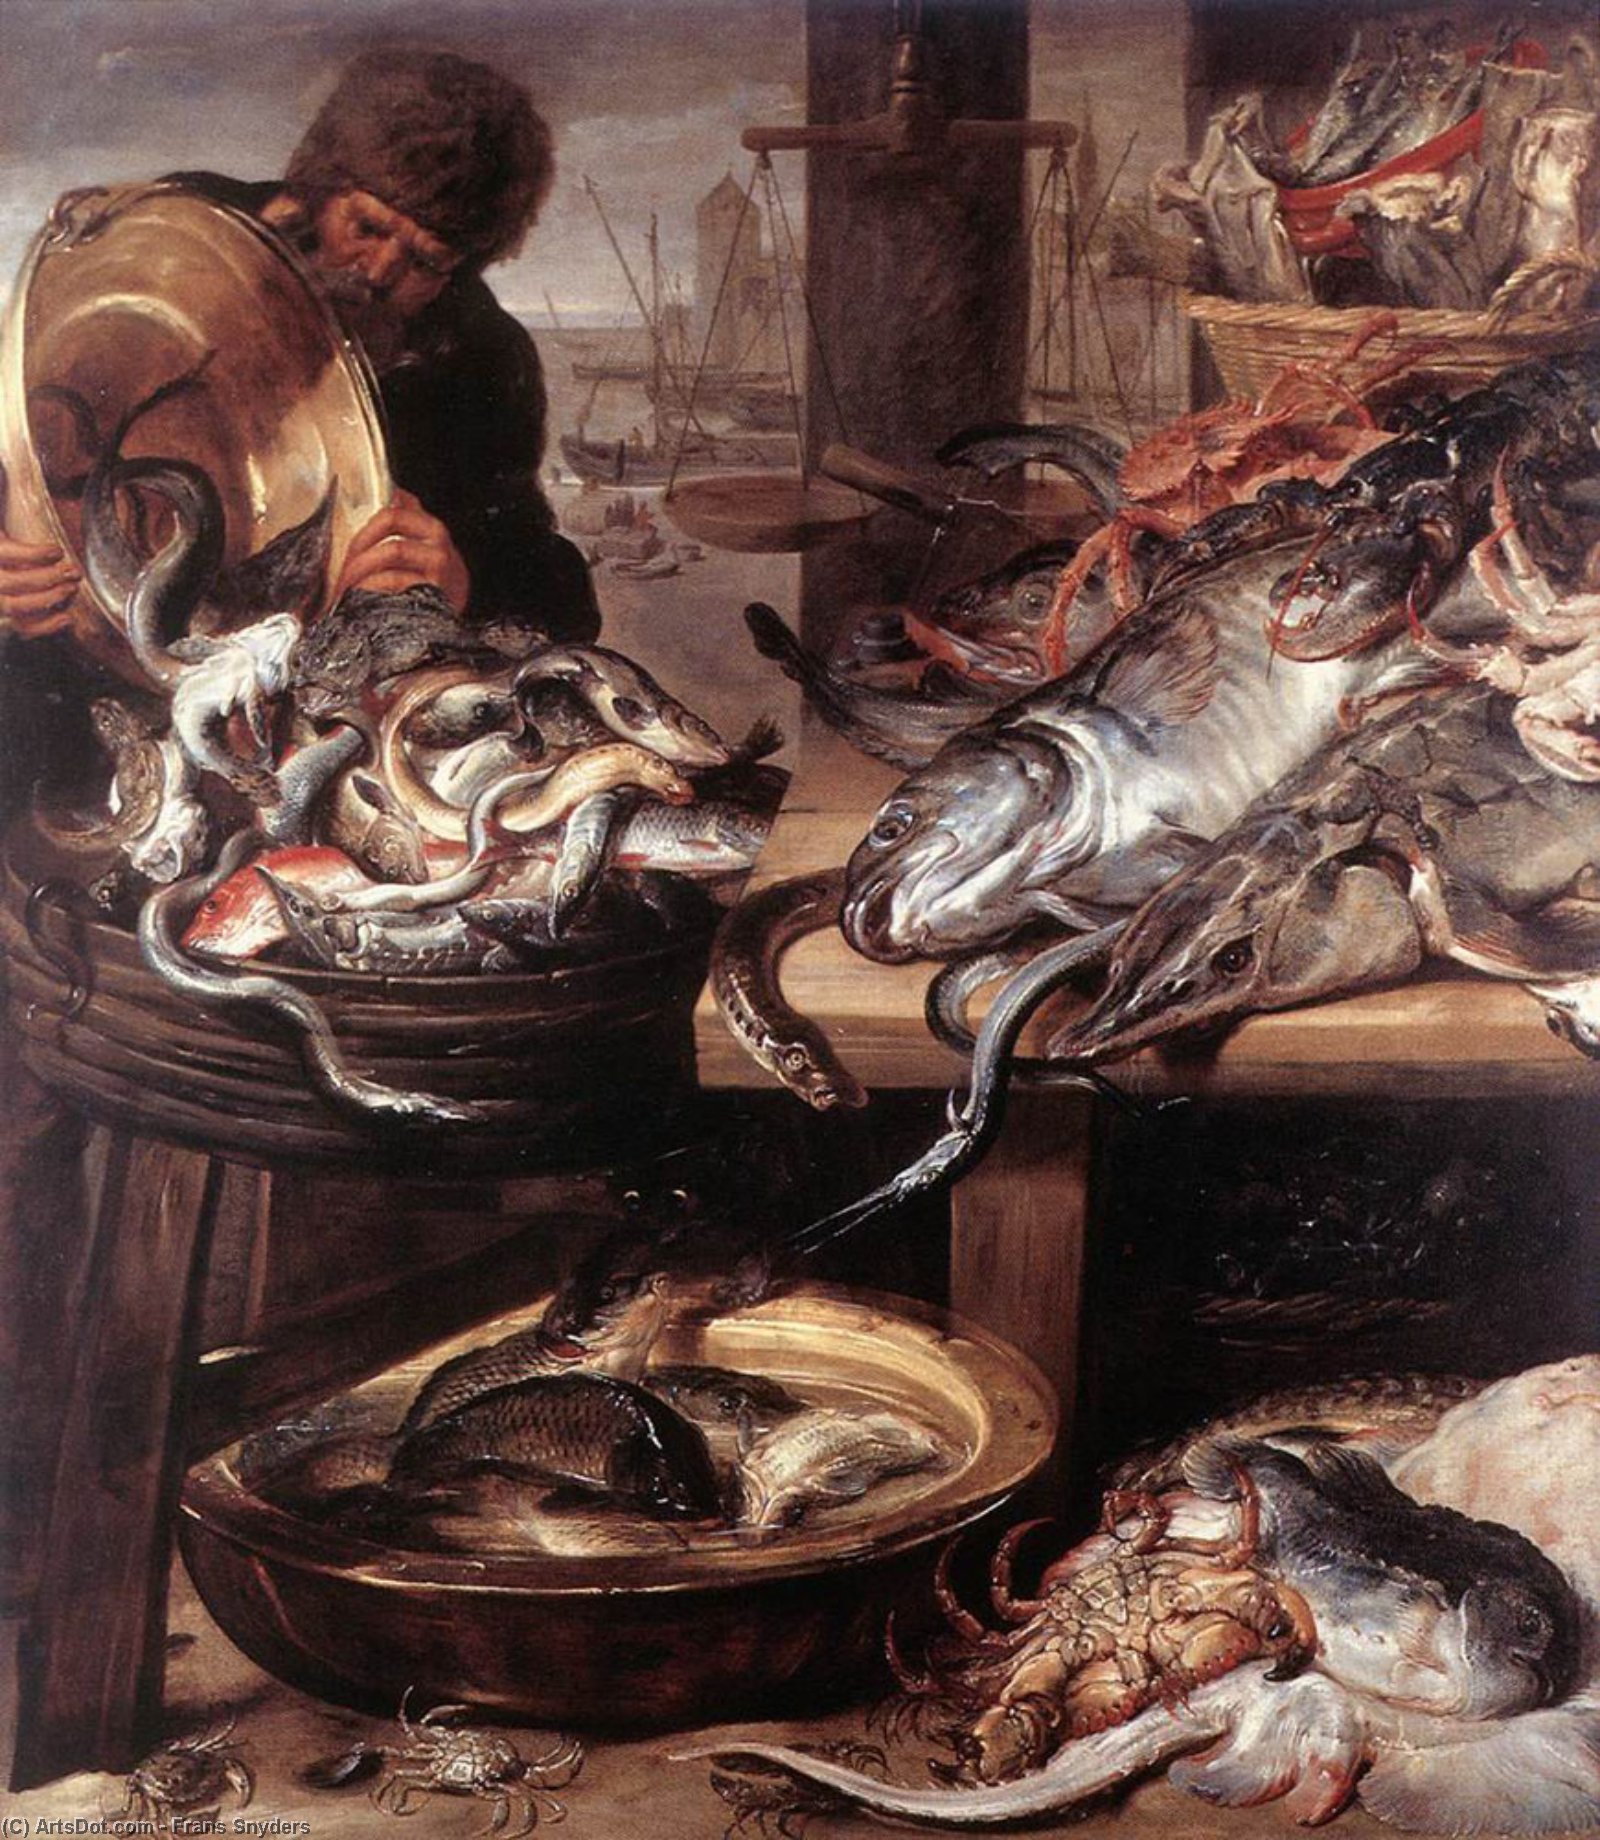 Снейдерс художник. Франс Снейдерс. Франс Снейдерс торговец рыбой. Франс Снейдерс (1579—1657). Снейдерс Франс (1579-1657). Рыбная Лавка.